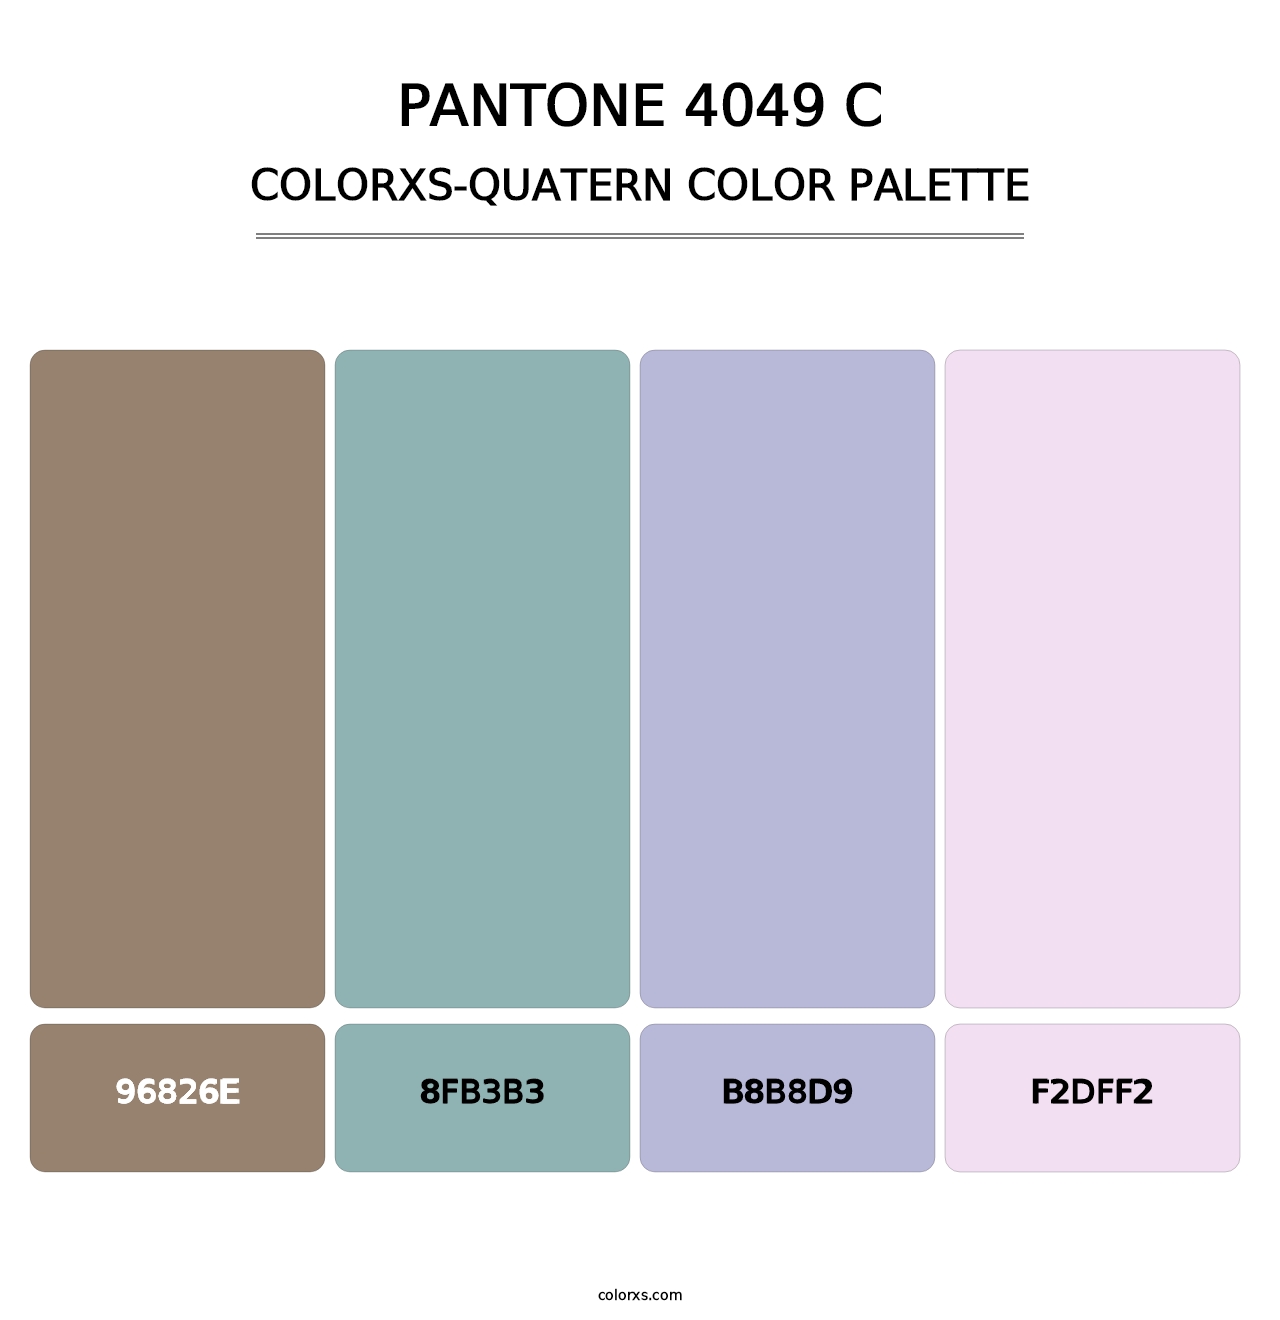 PANTONE 4049 C - Colorxs Quatern Palette